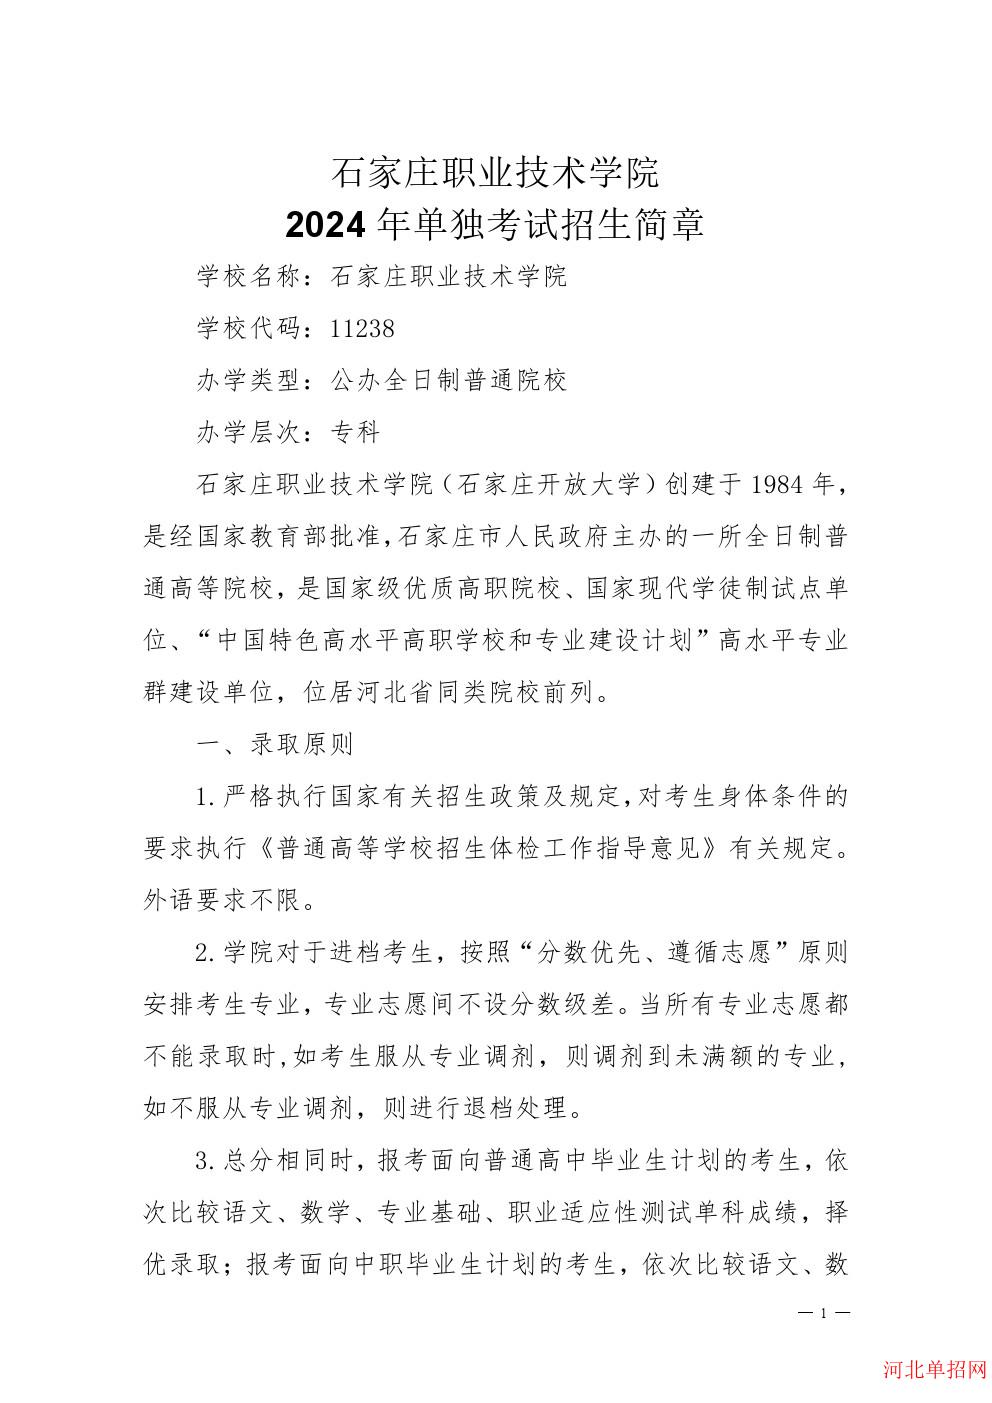 石家庄职业技术学院2024年单招招生简章 图1